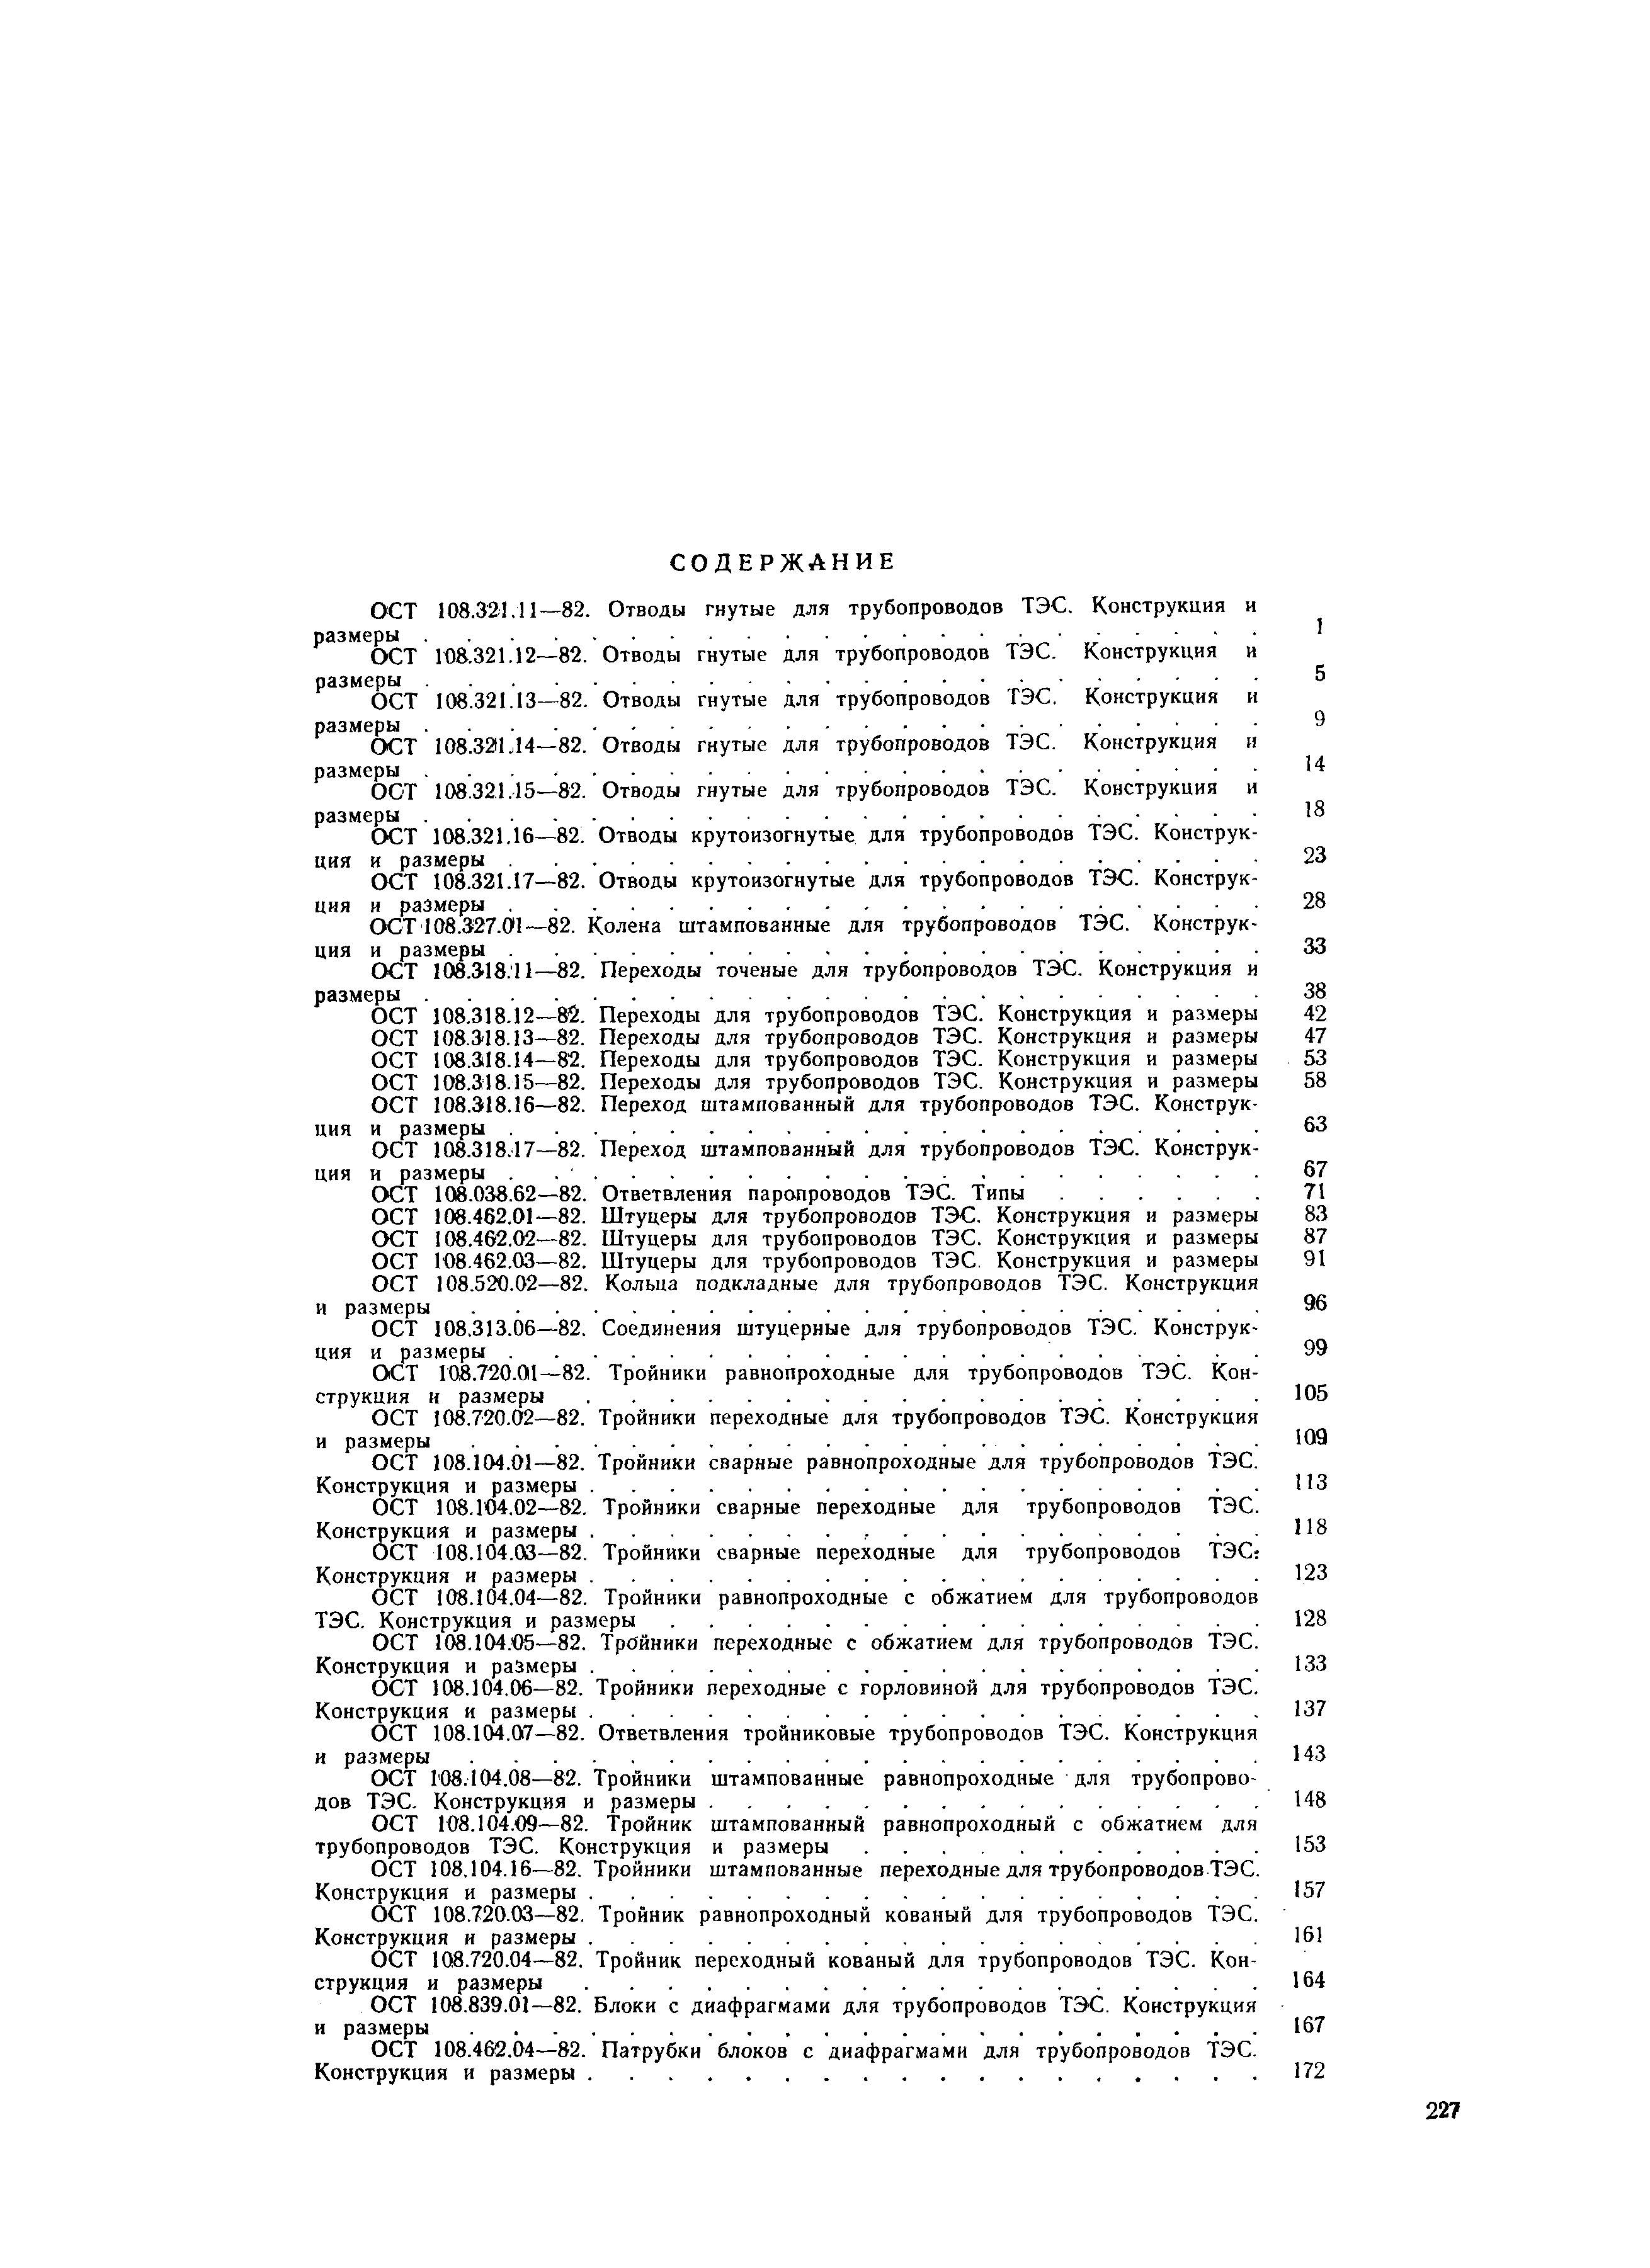 ОСТ 108.321.13-82